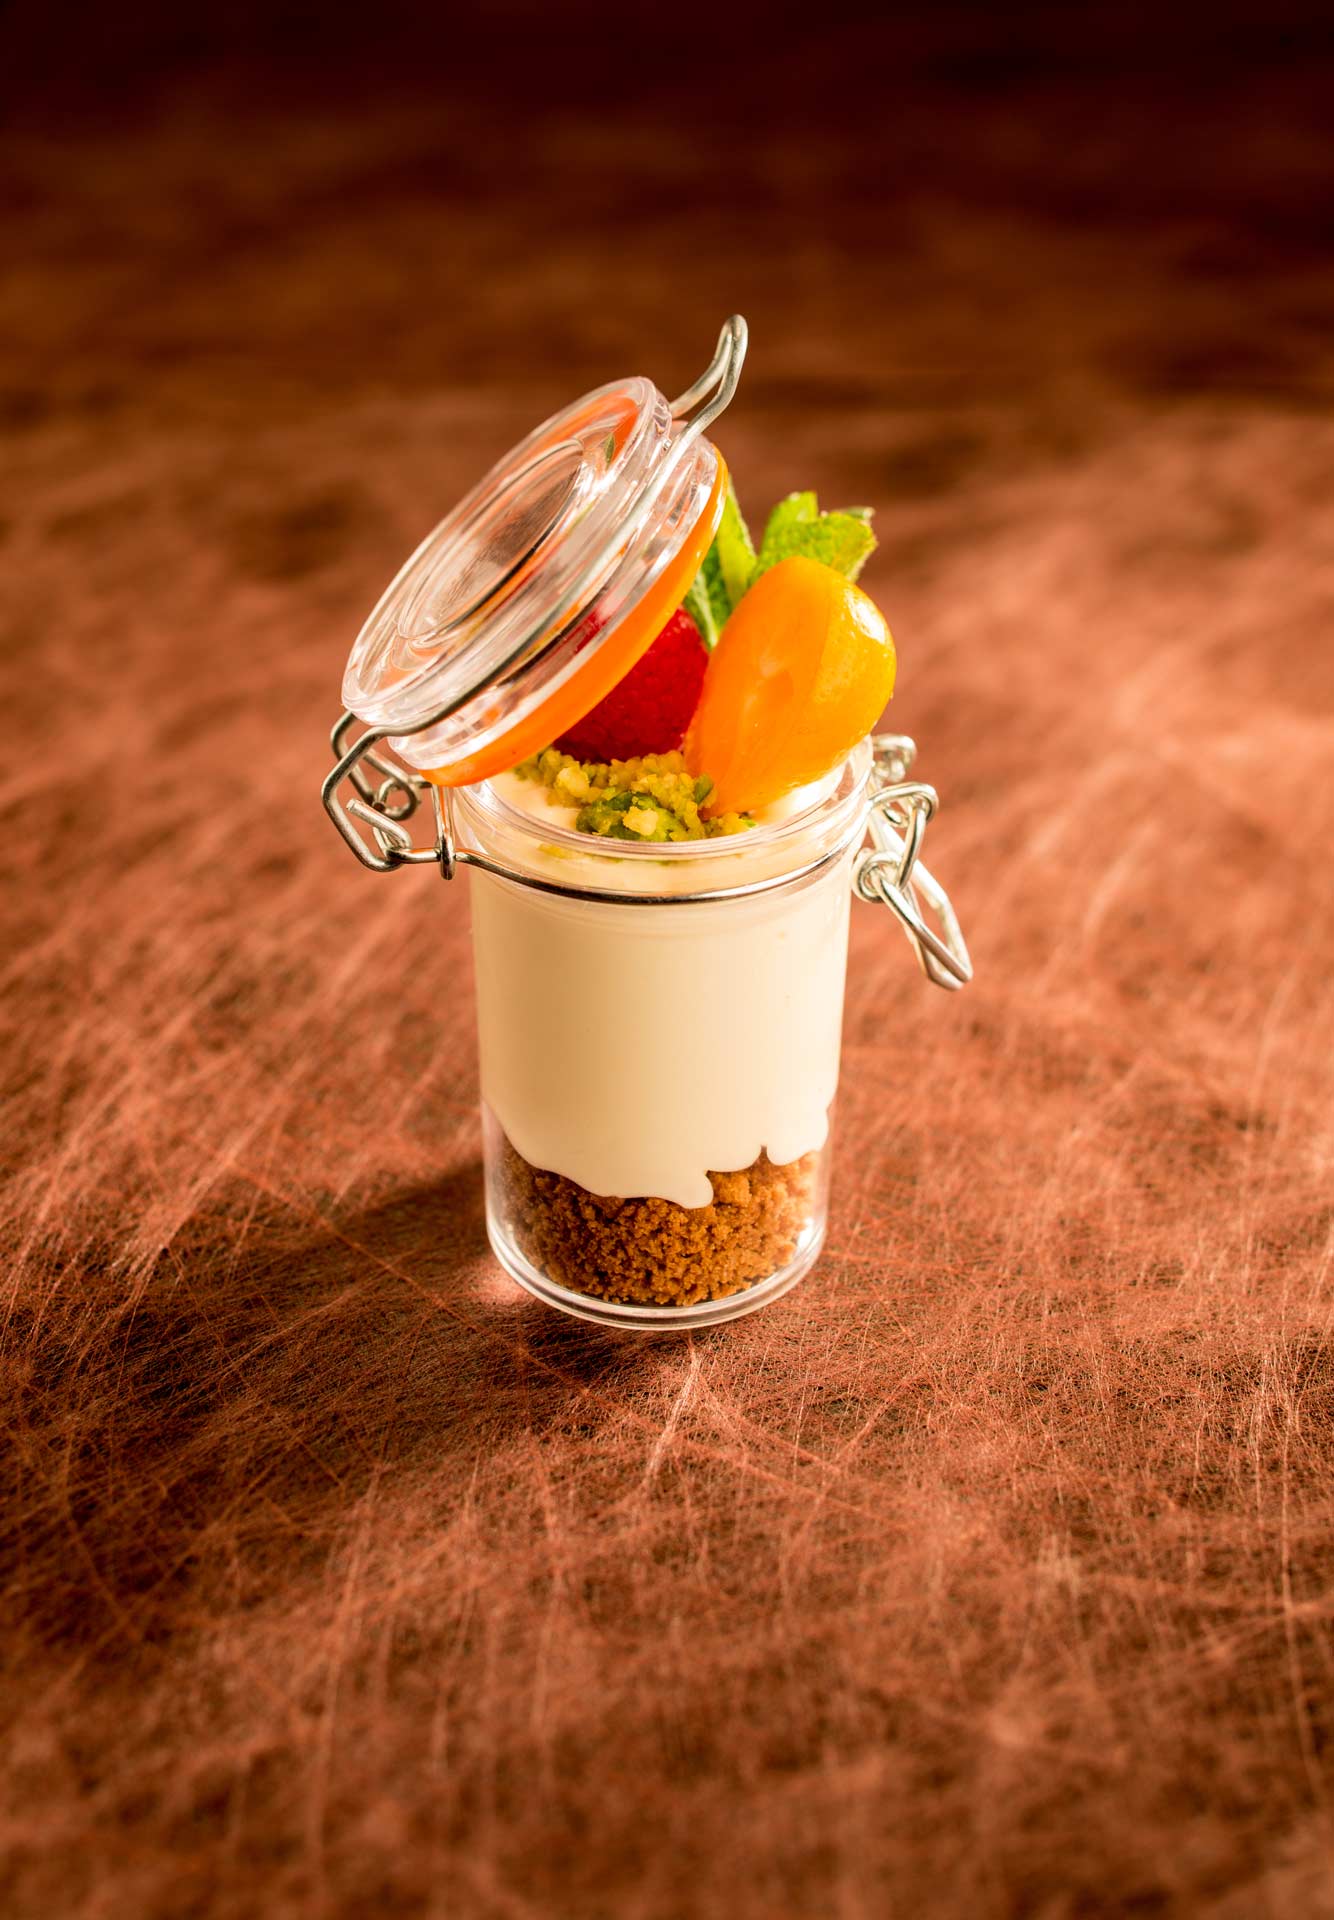 Crème dessert au fruits et crumble - Visuel culinaire réalisé en studio photo professionnel à Strasbourg dans le Bas-Rhin en Alsace